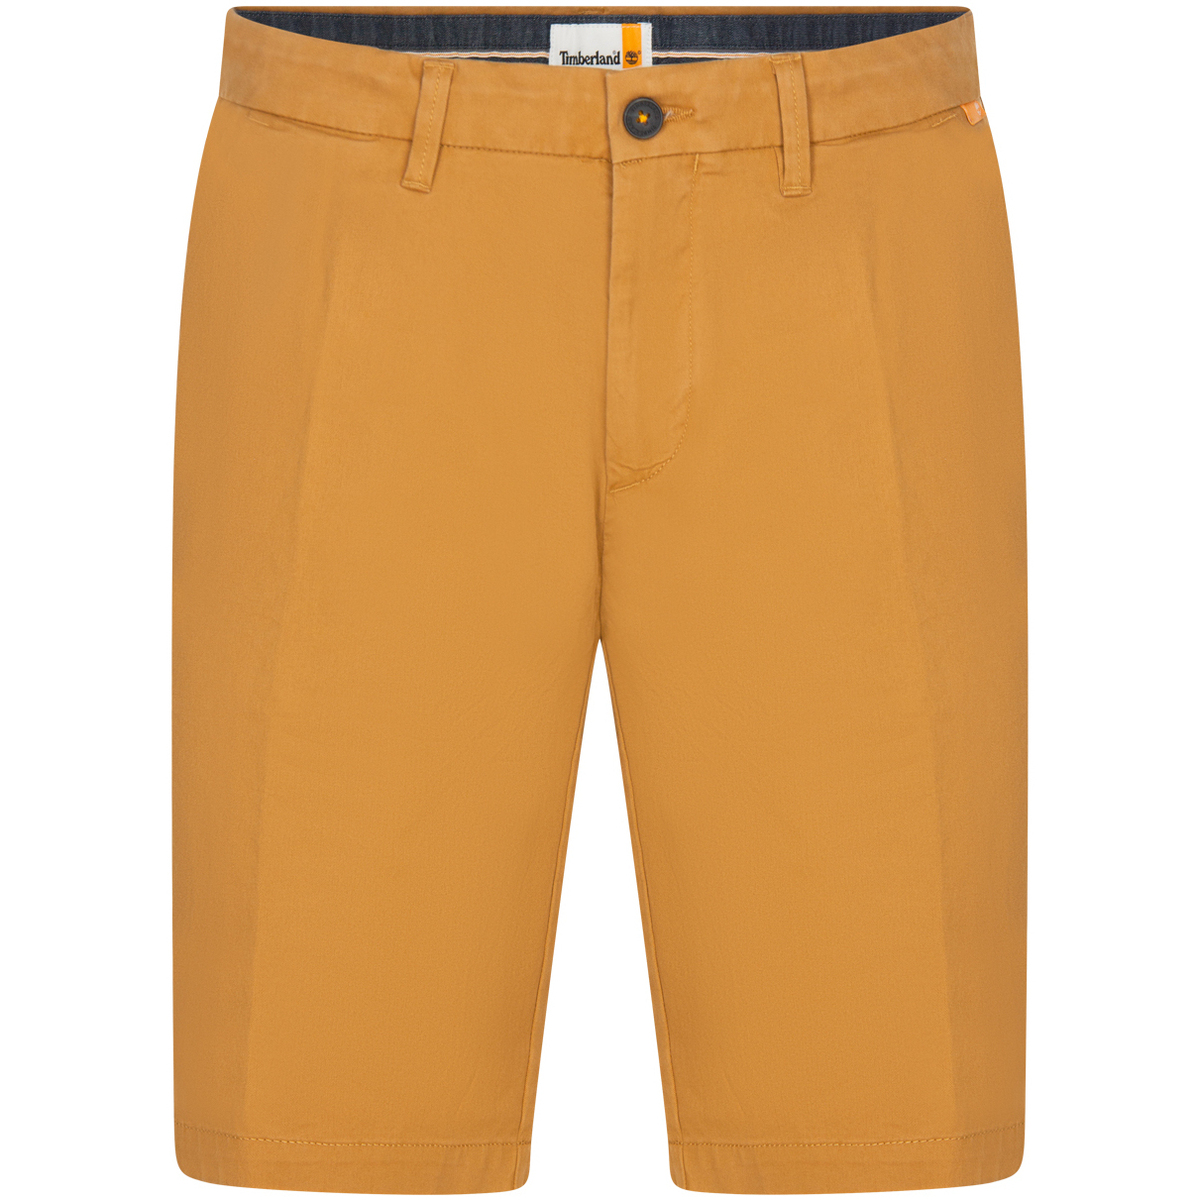 Vêtements Homme Shorts / Bermudas Timberland Short coton droit Beige